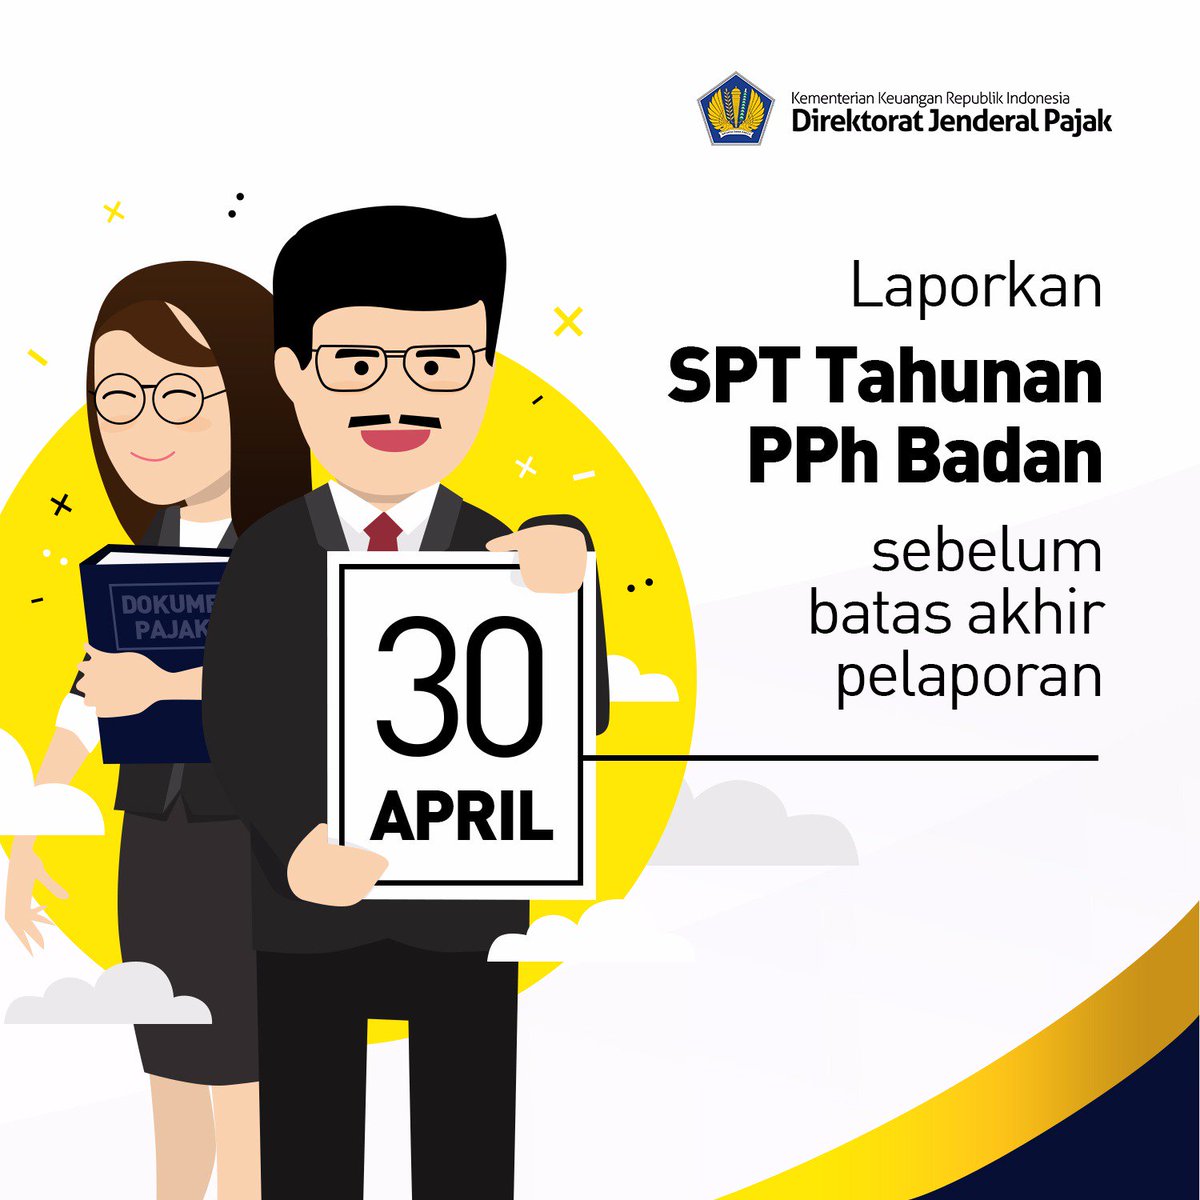 Pajakkitauntukkita در توییتر Ingat Batas Waktu Penyampaian Spt Pph Badan Adalah 30 April 2017 Lapor Segera Ya Kaaak